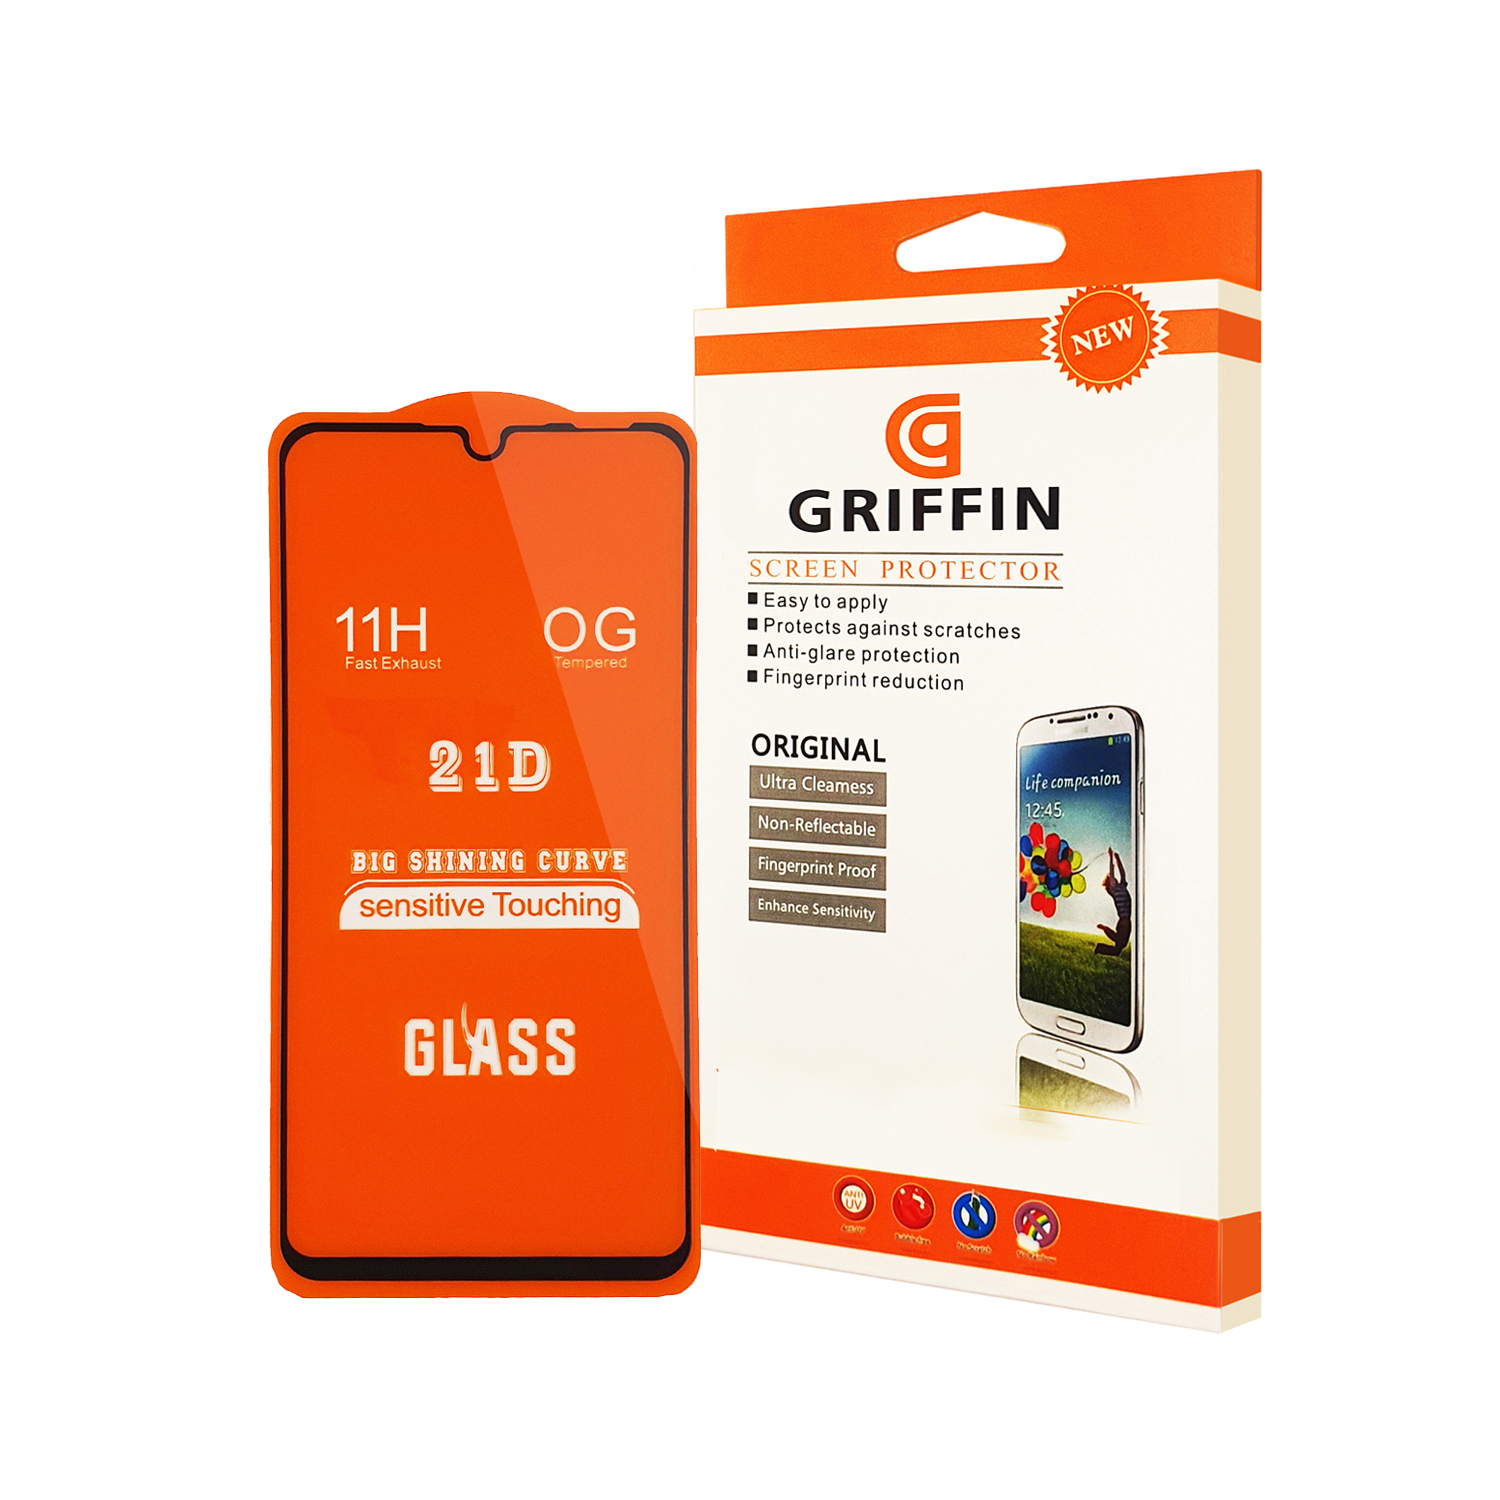 محافظ صفحه نمایش گریفین مدل F21 GN to مناسب برای گوشی موبایل هوآوی P30 lite